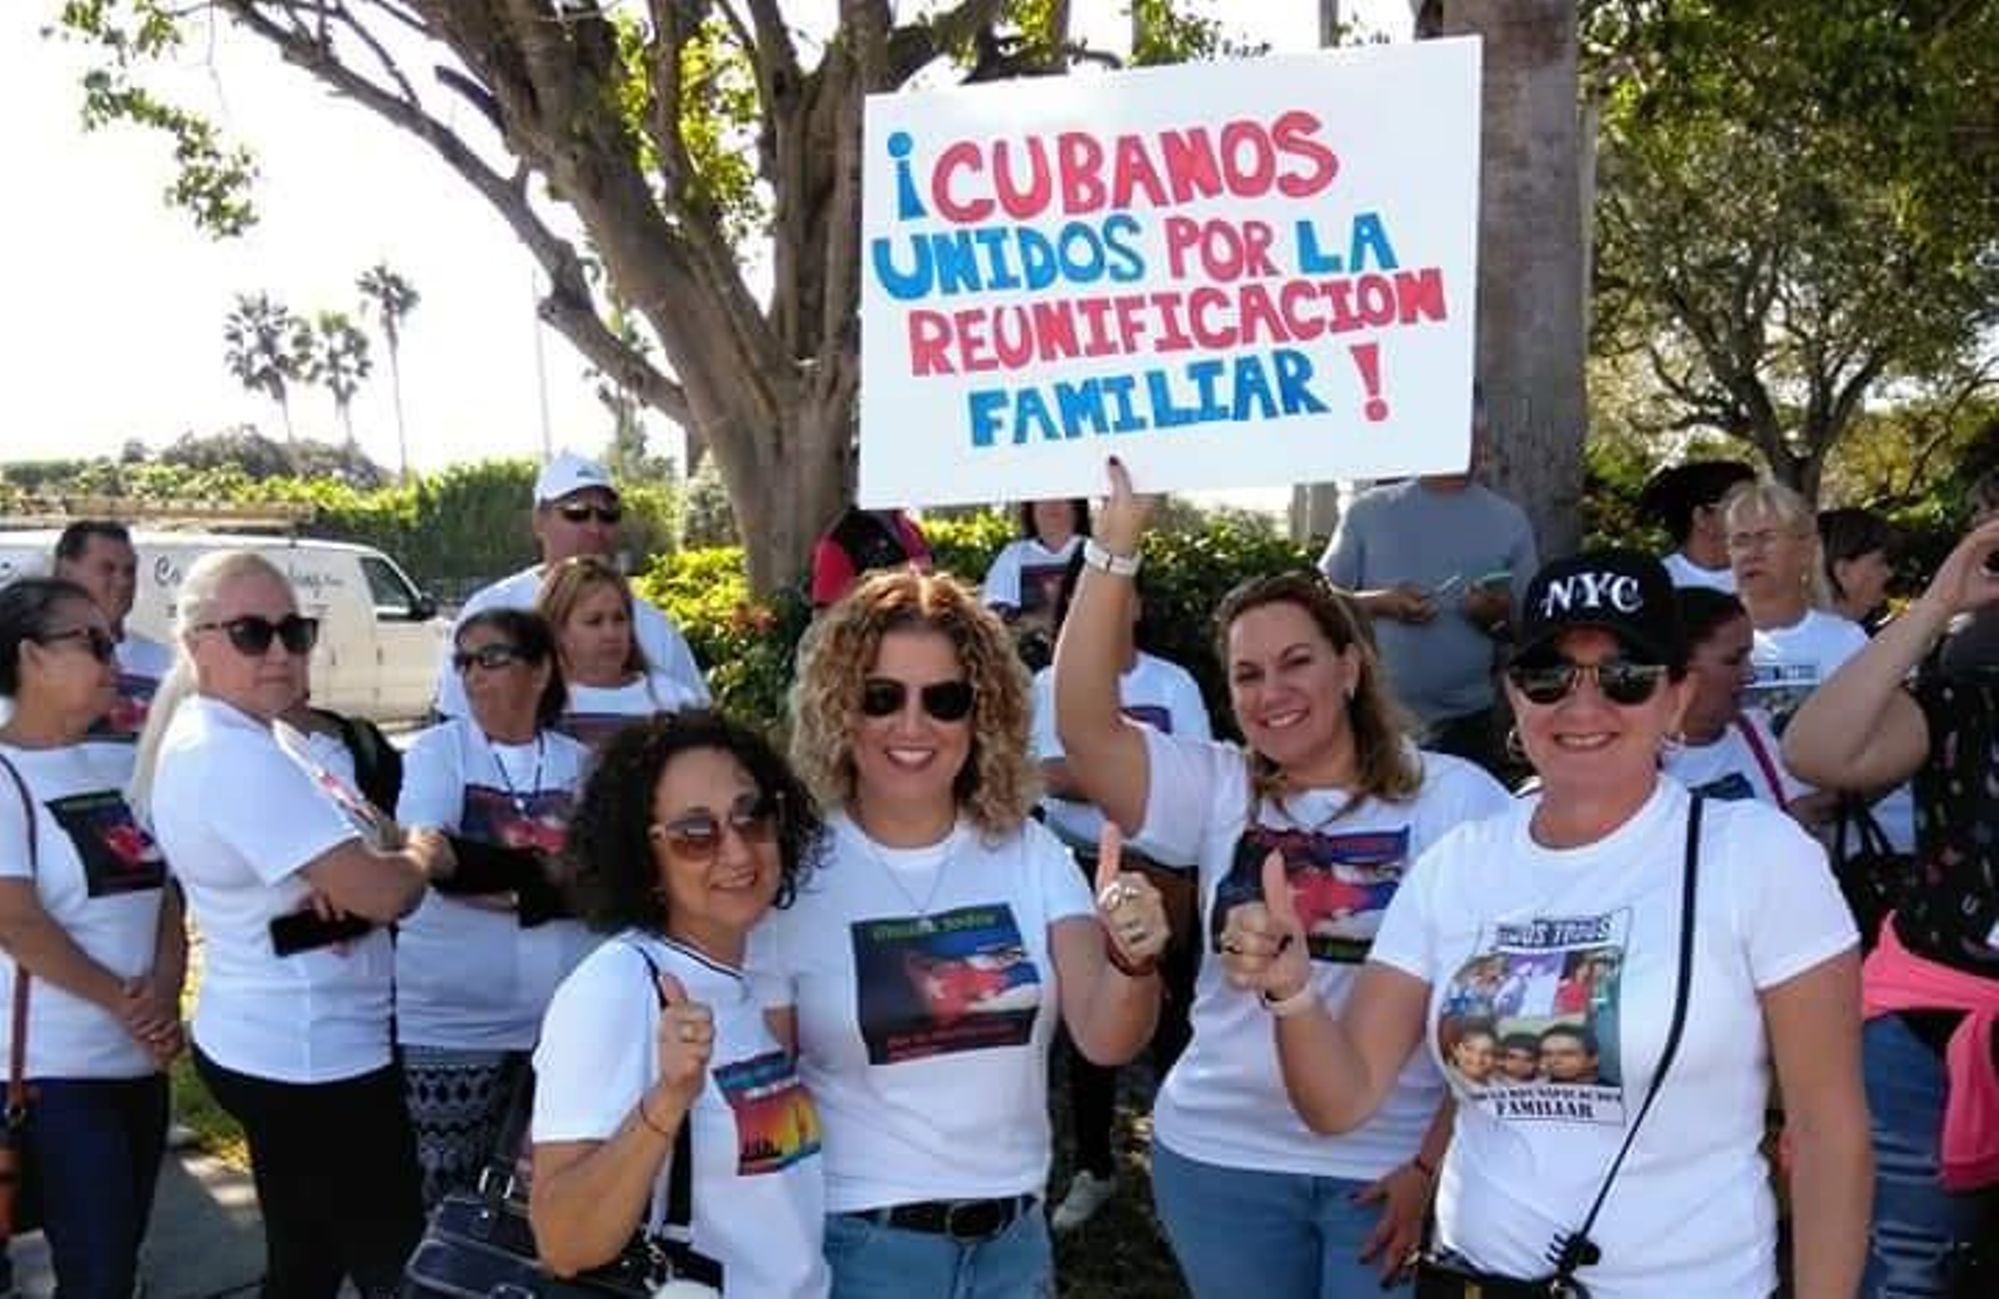 Manifestantes piden en Miami reactivar reunificación de familias